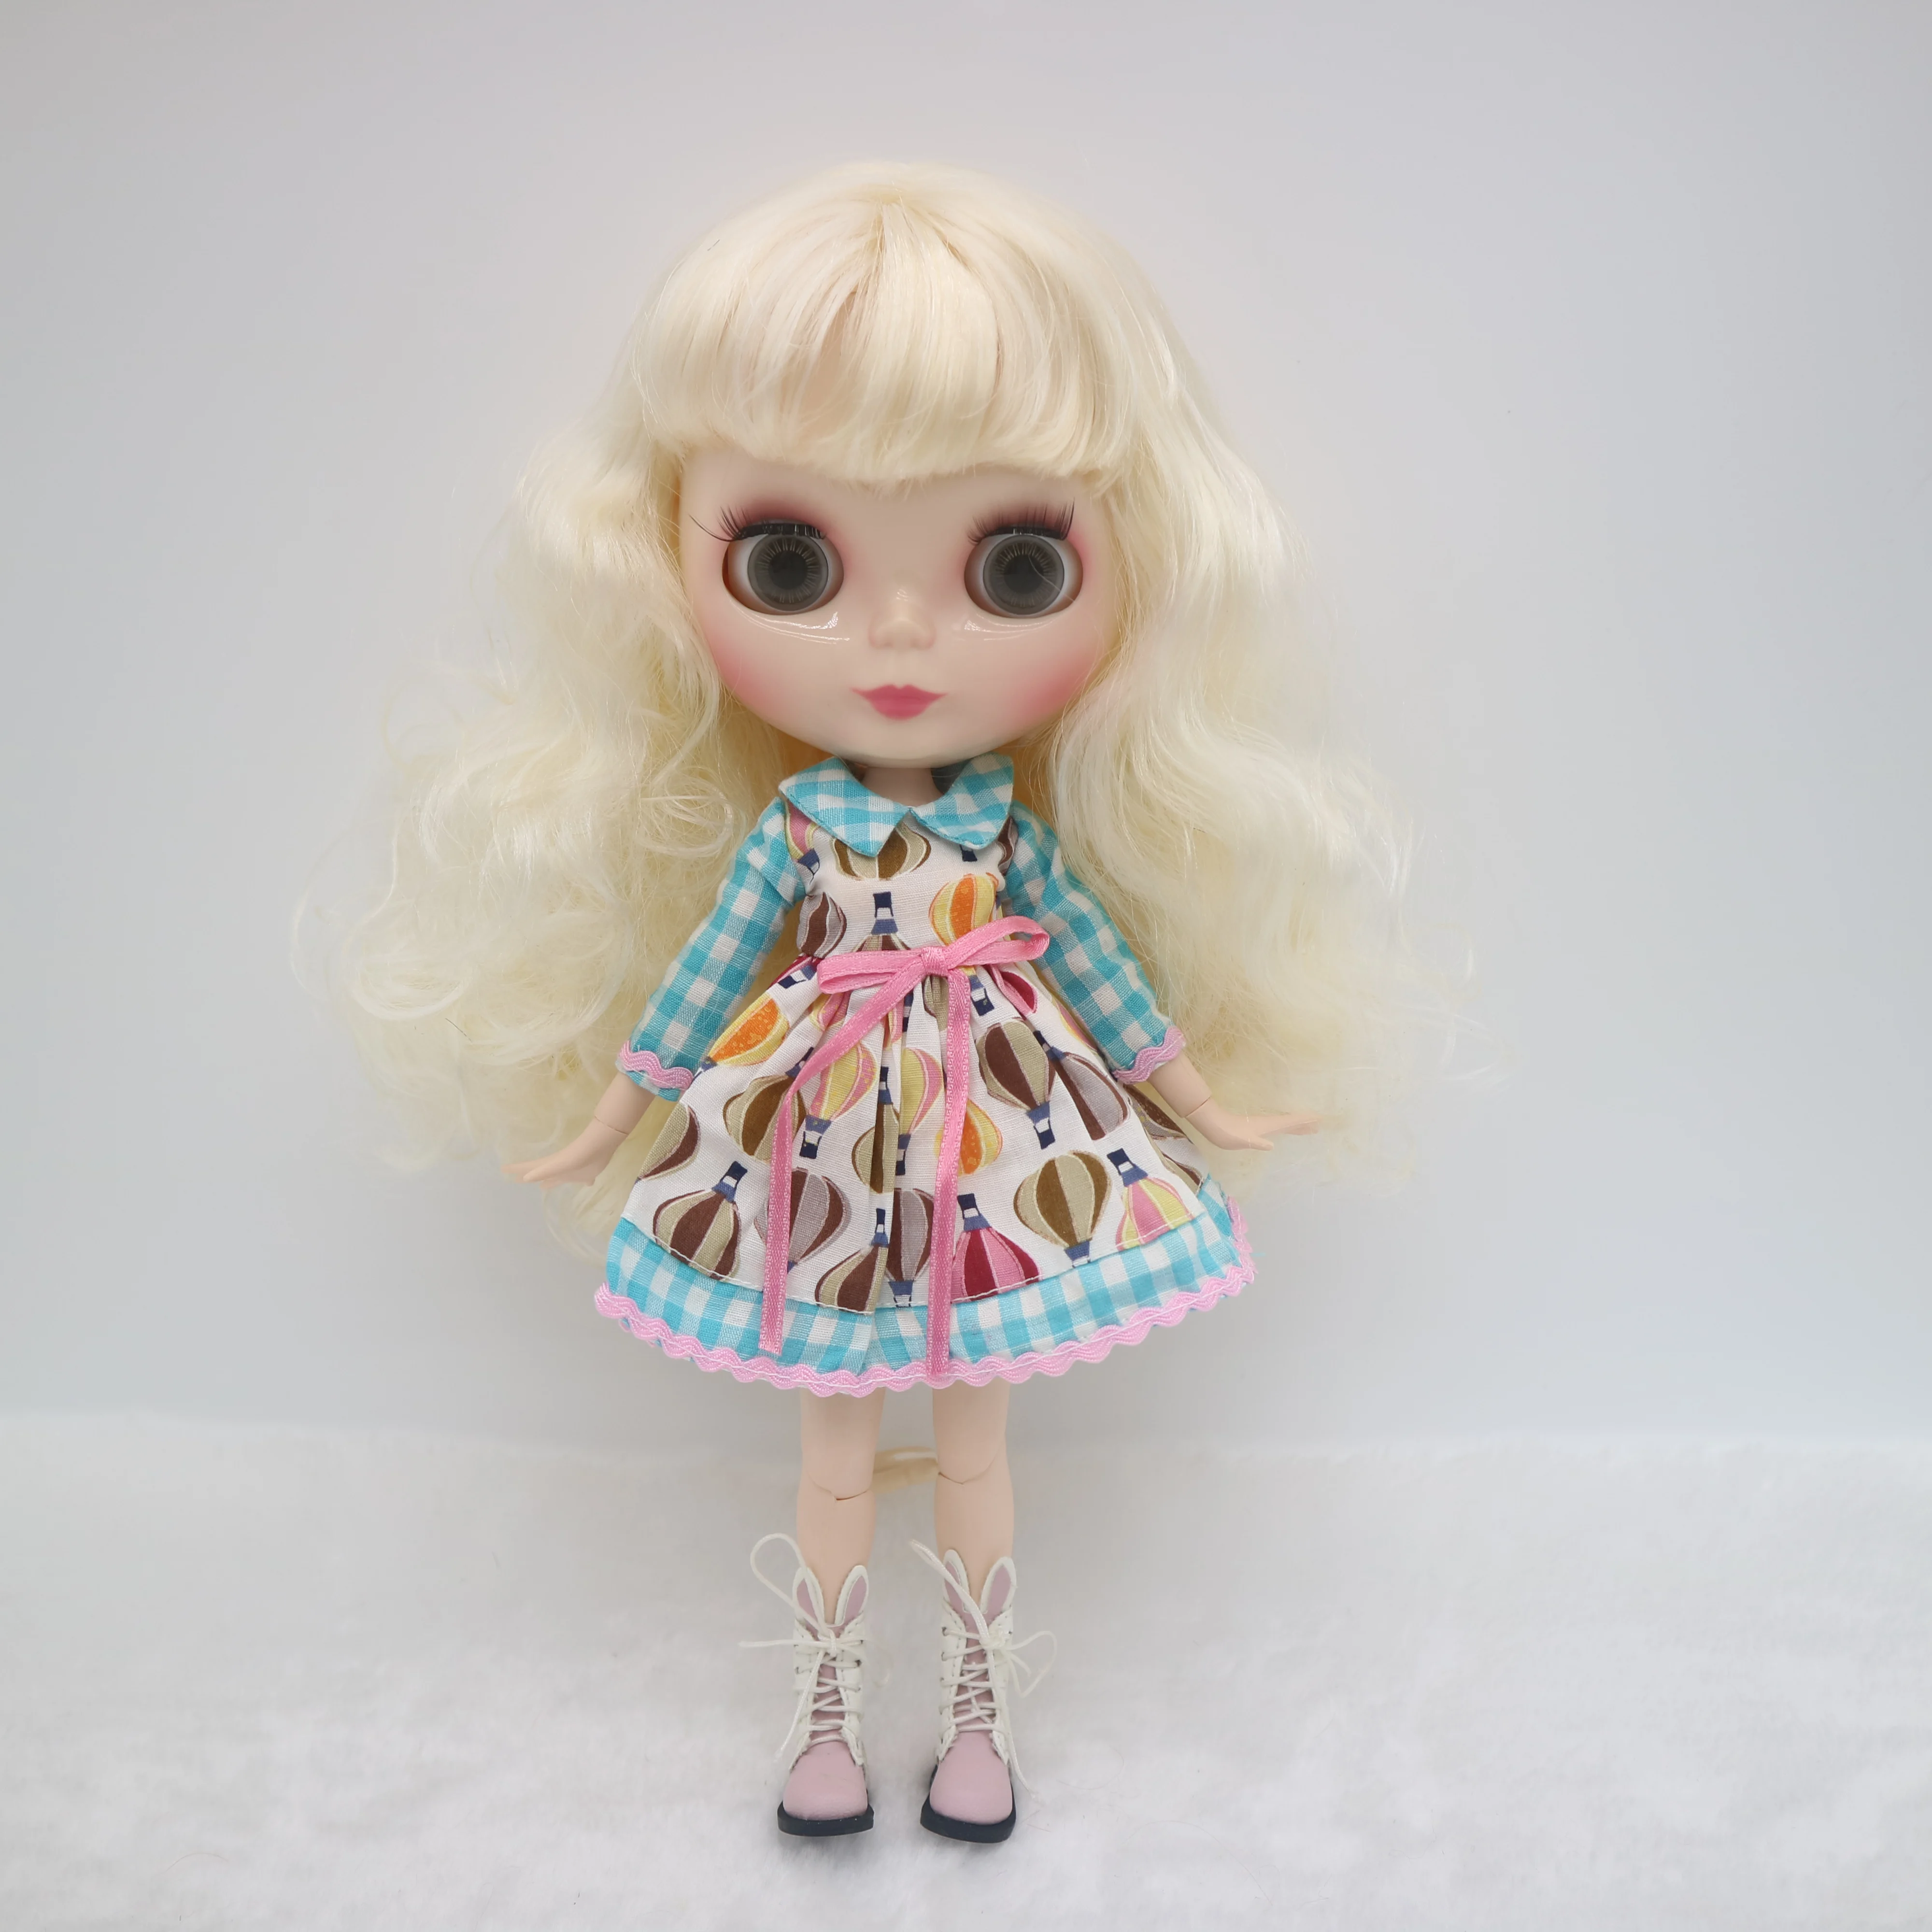 Кукла Blyth на заказ . куклы длиной 30 см со светлыми волосами Изображение 1